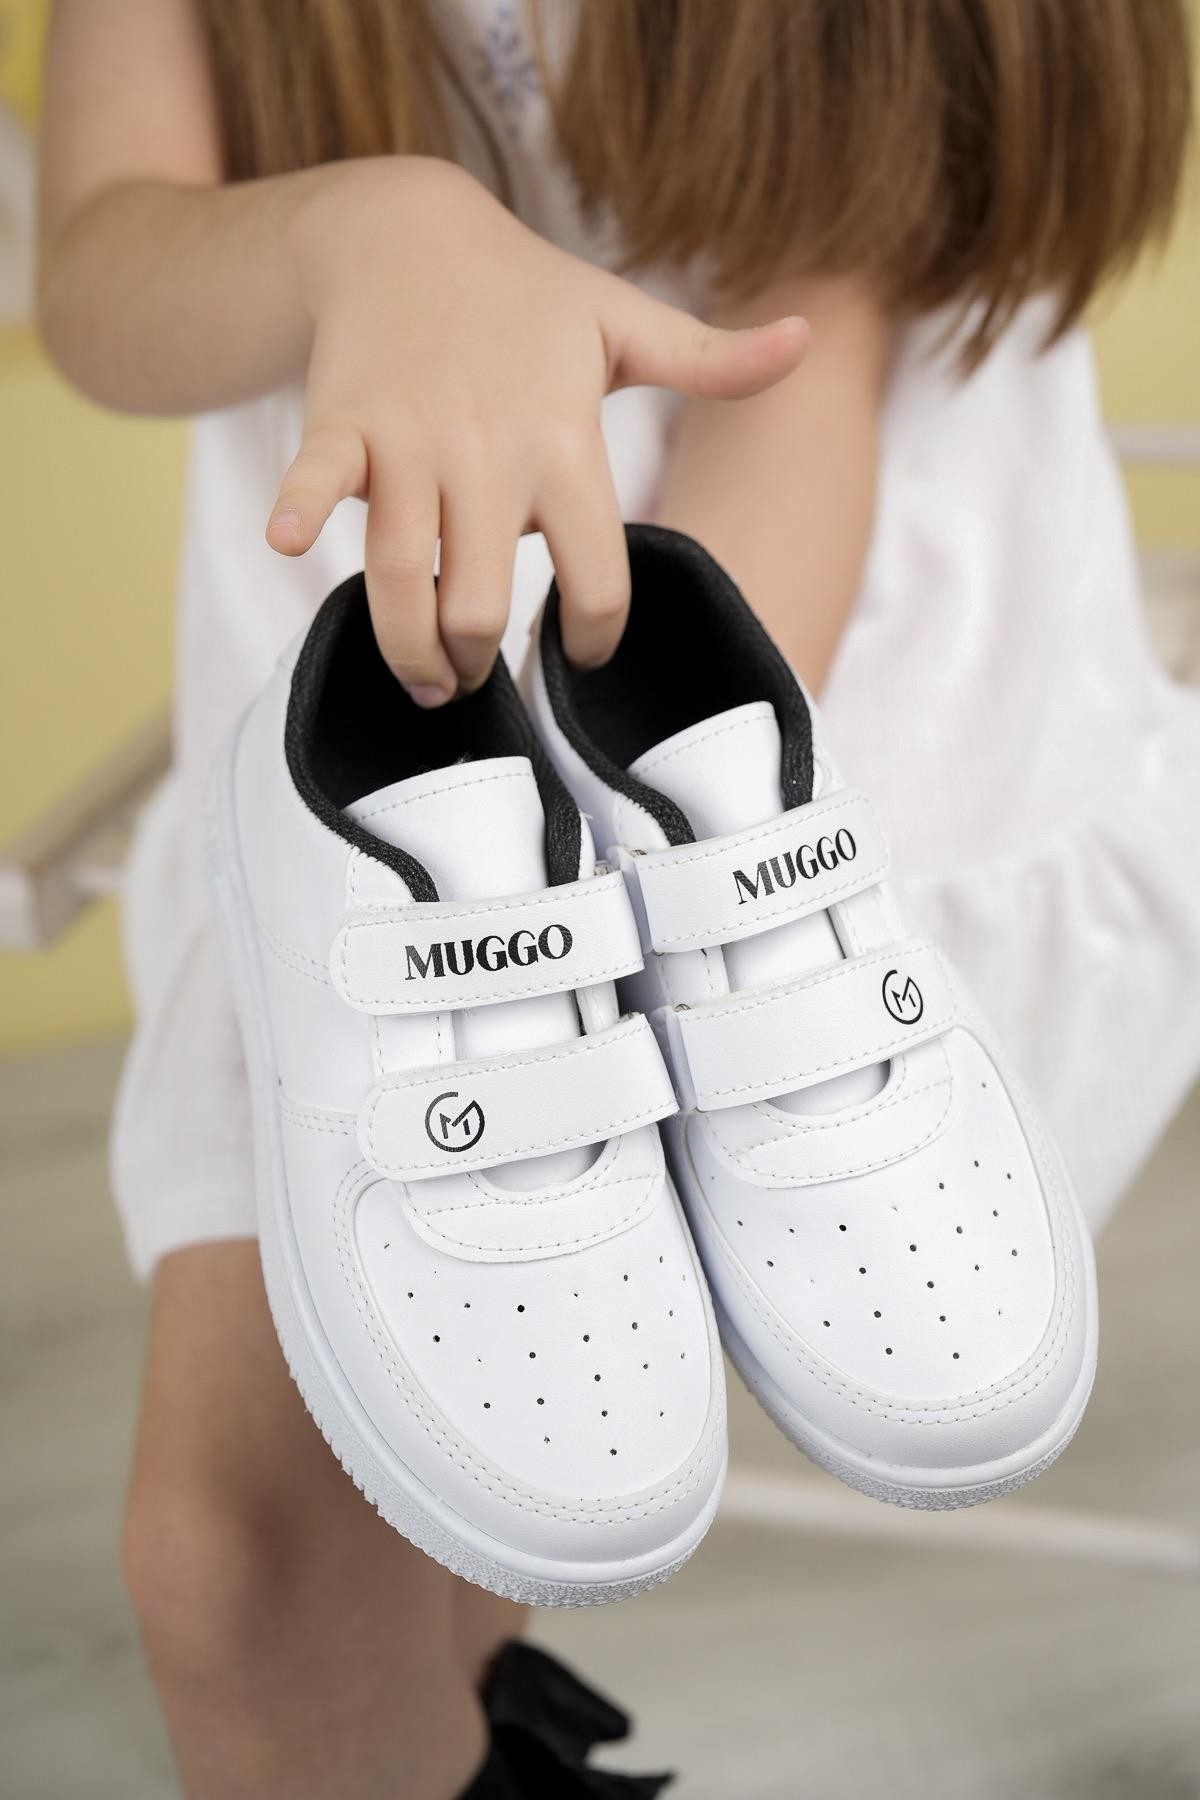 Muggo Alvin Garantili Unisex Çocuk Cırtlı Rahat Günlük Sneaker Spor Ayakkabı - SİYAH- BEYAZ